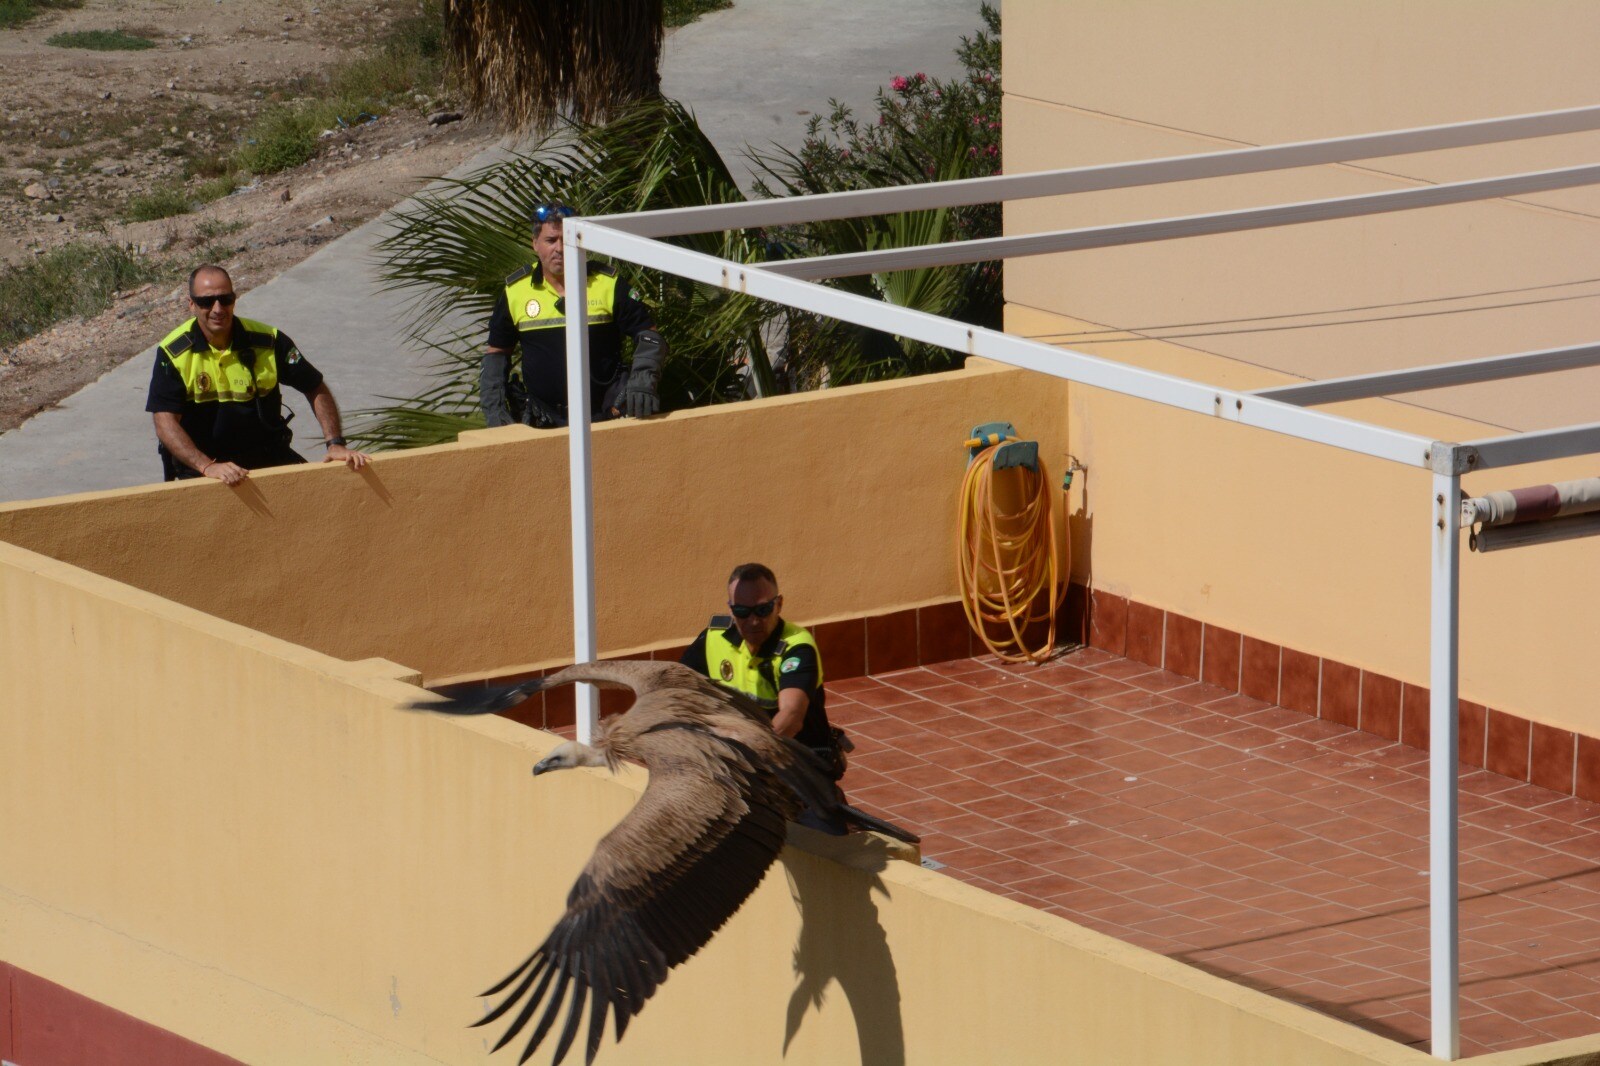 Agentes del GRUPRONA (Grupo de Protección de la Naturaleza de la Policía Local de Málaga) intentaron rescatar al animal de grandes dimensiones pero según los vecinos, al final acabó huyen en dirección a la desembocadura del Guadalhorce.